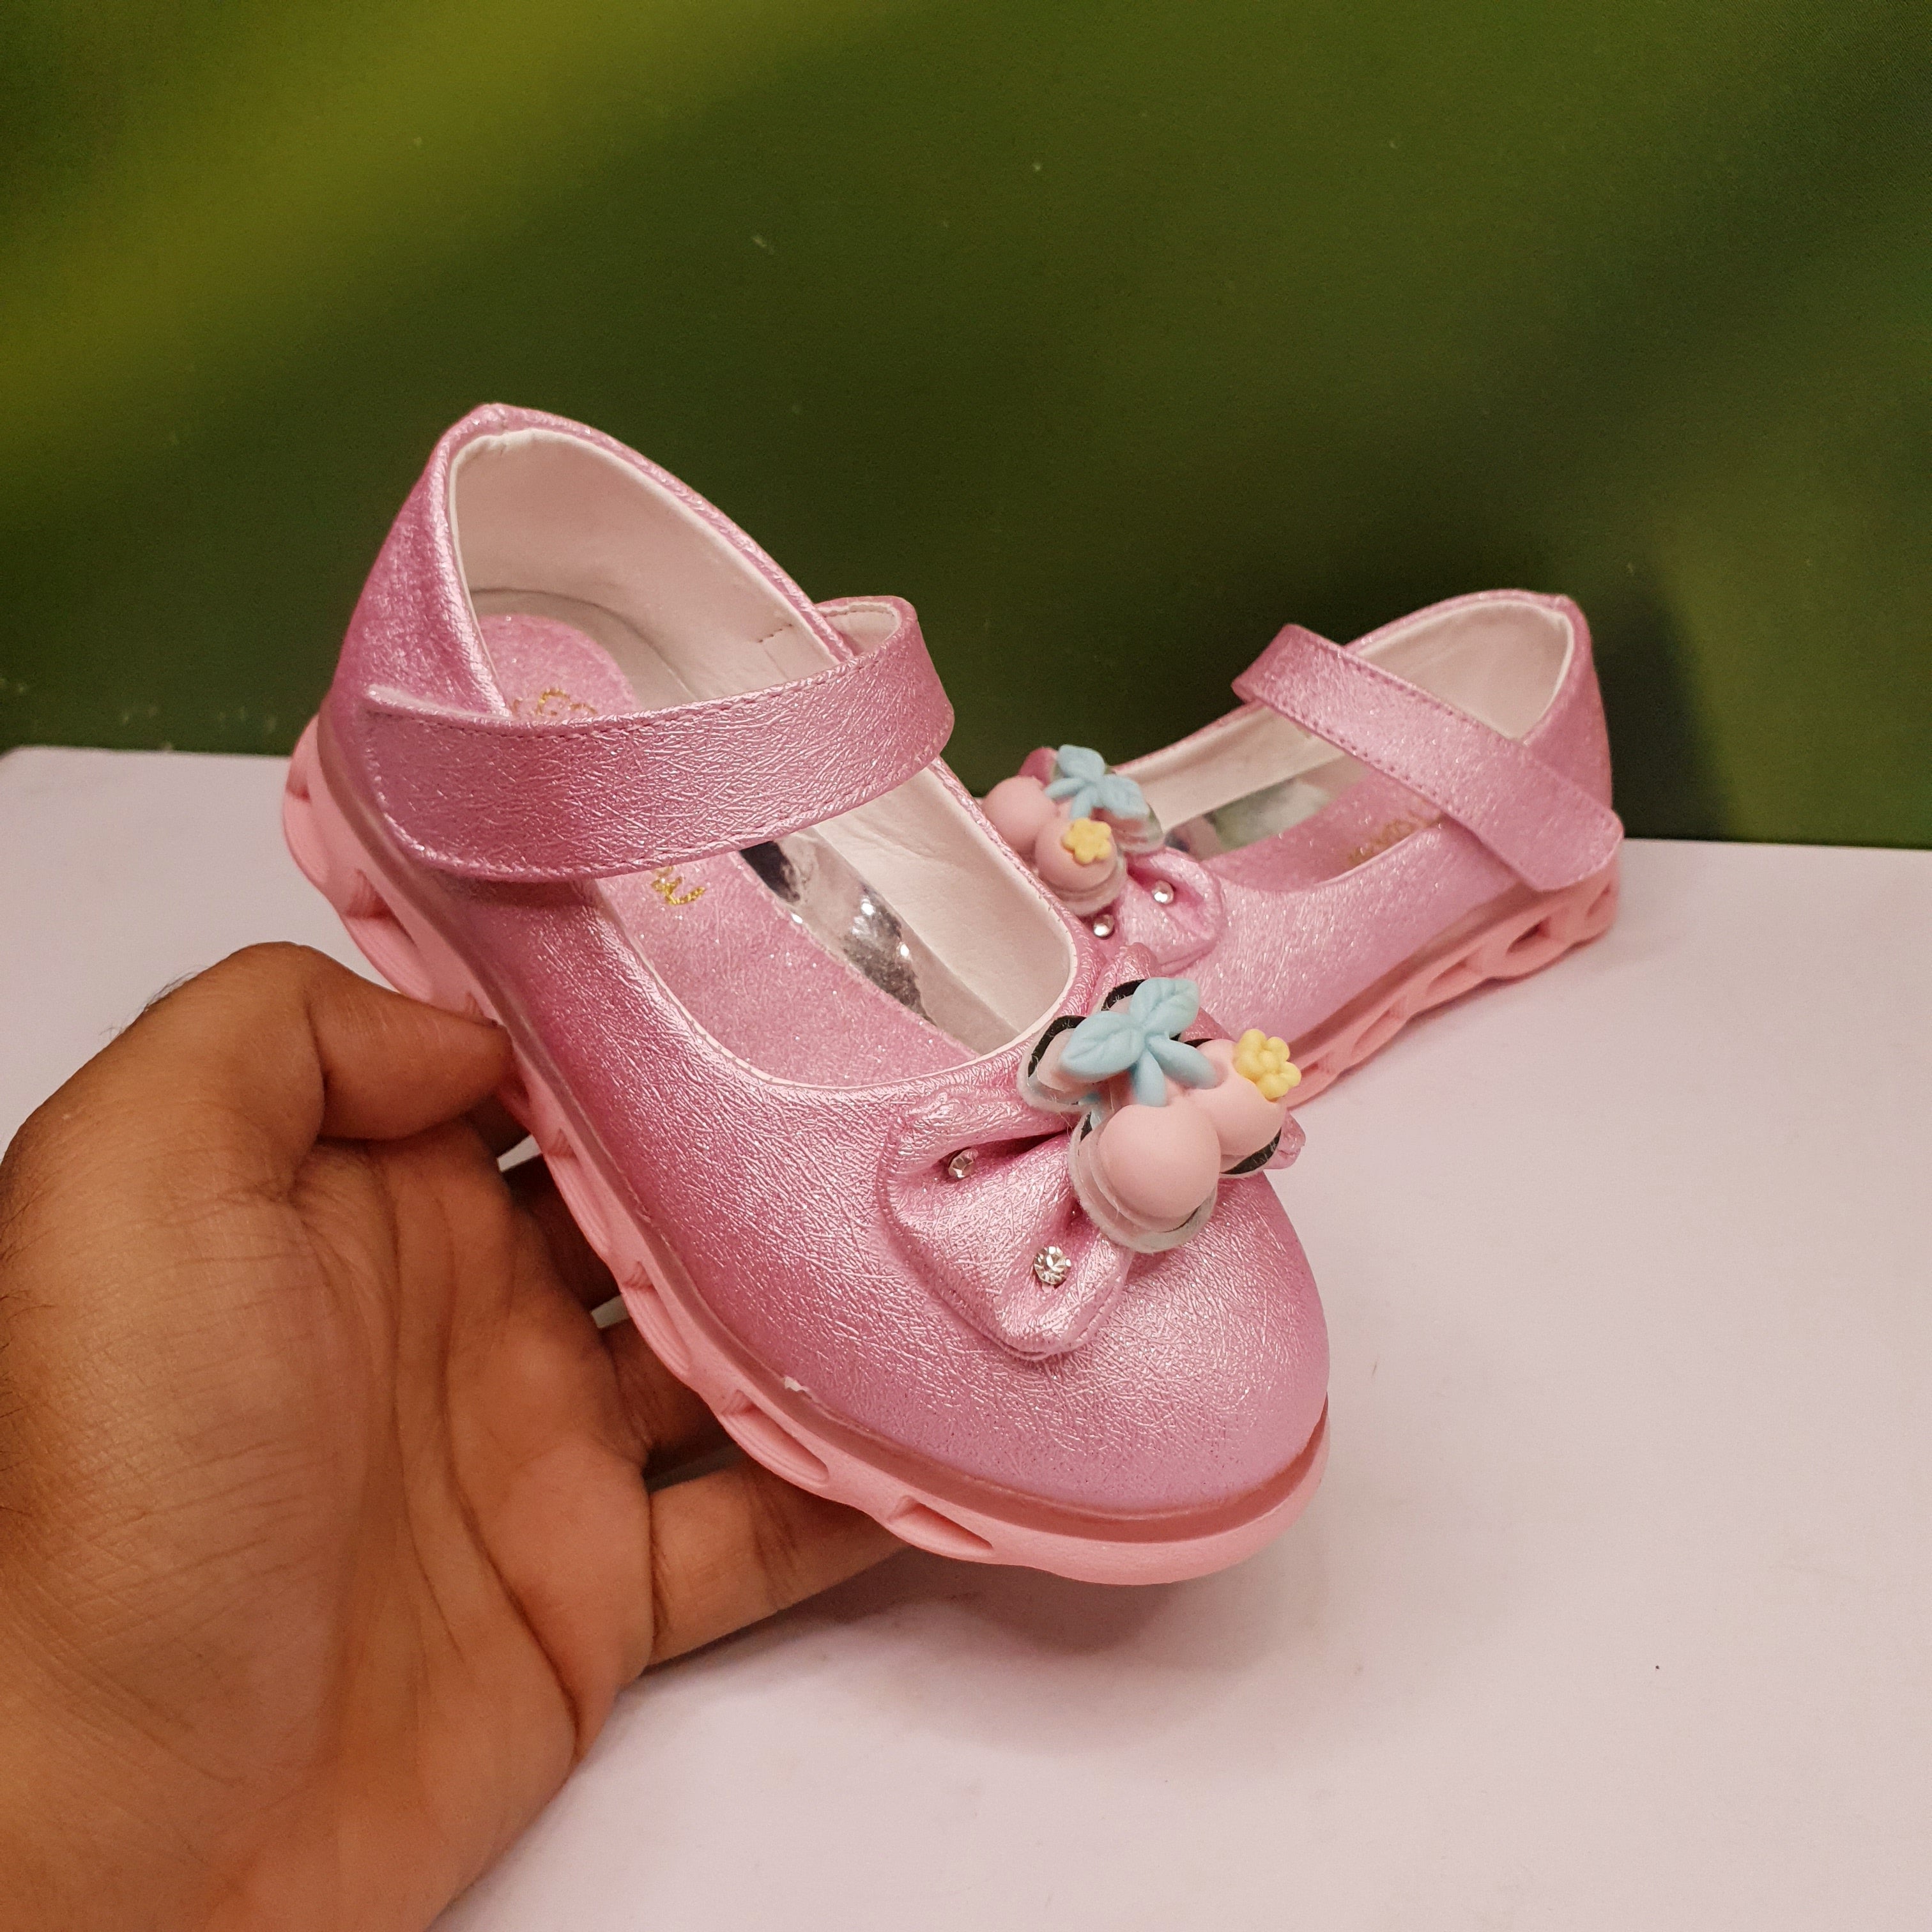 Bow Kids Pumps - Maha fashions -  Kids Footwear